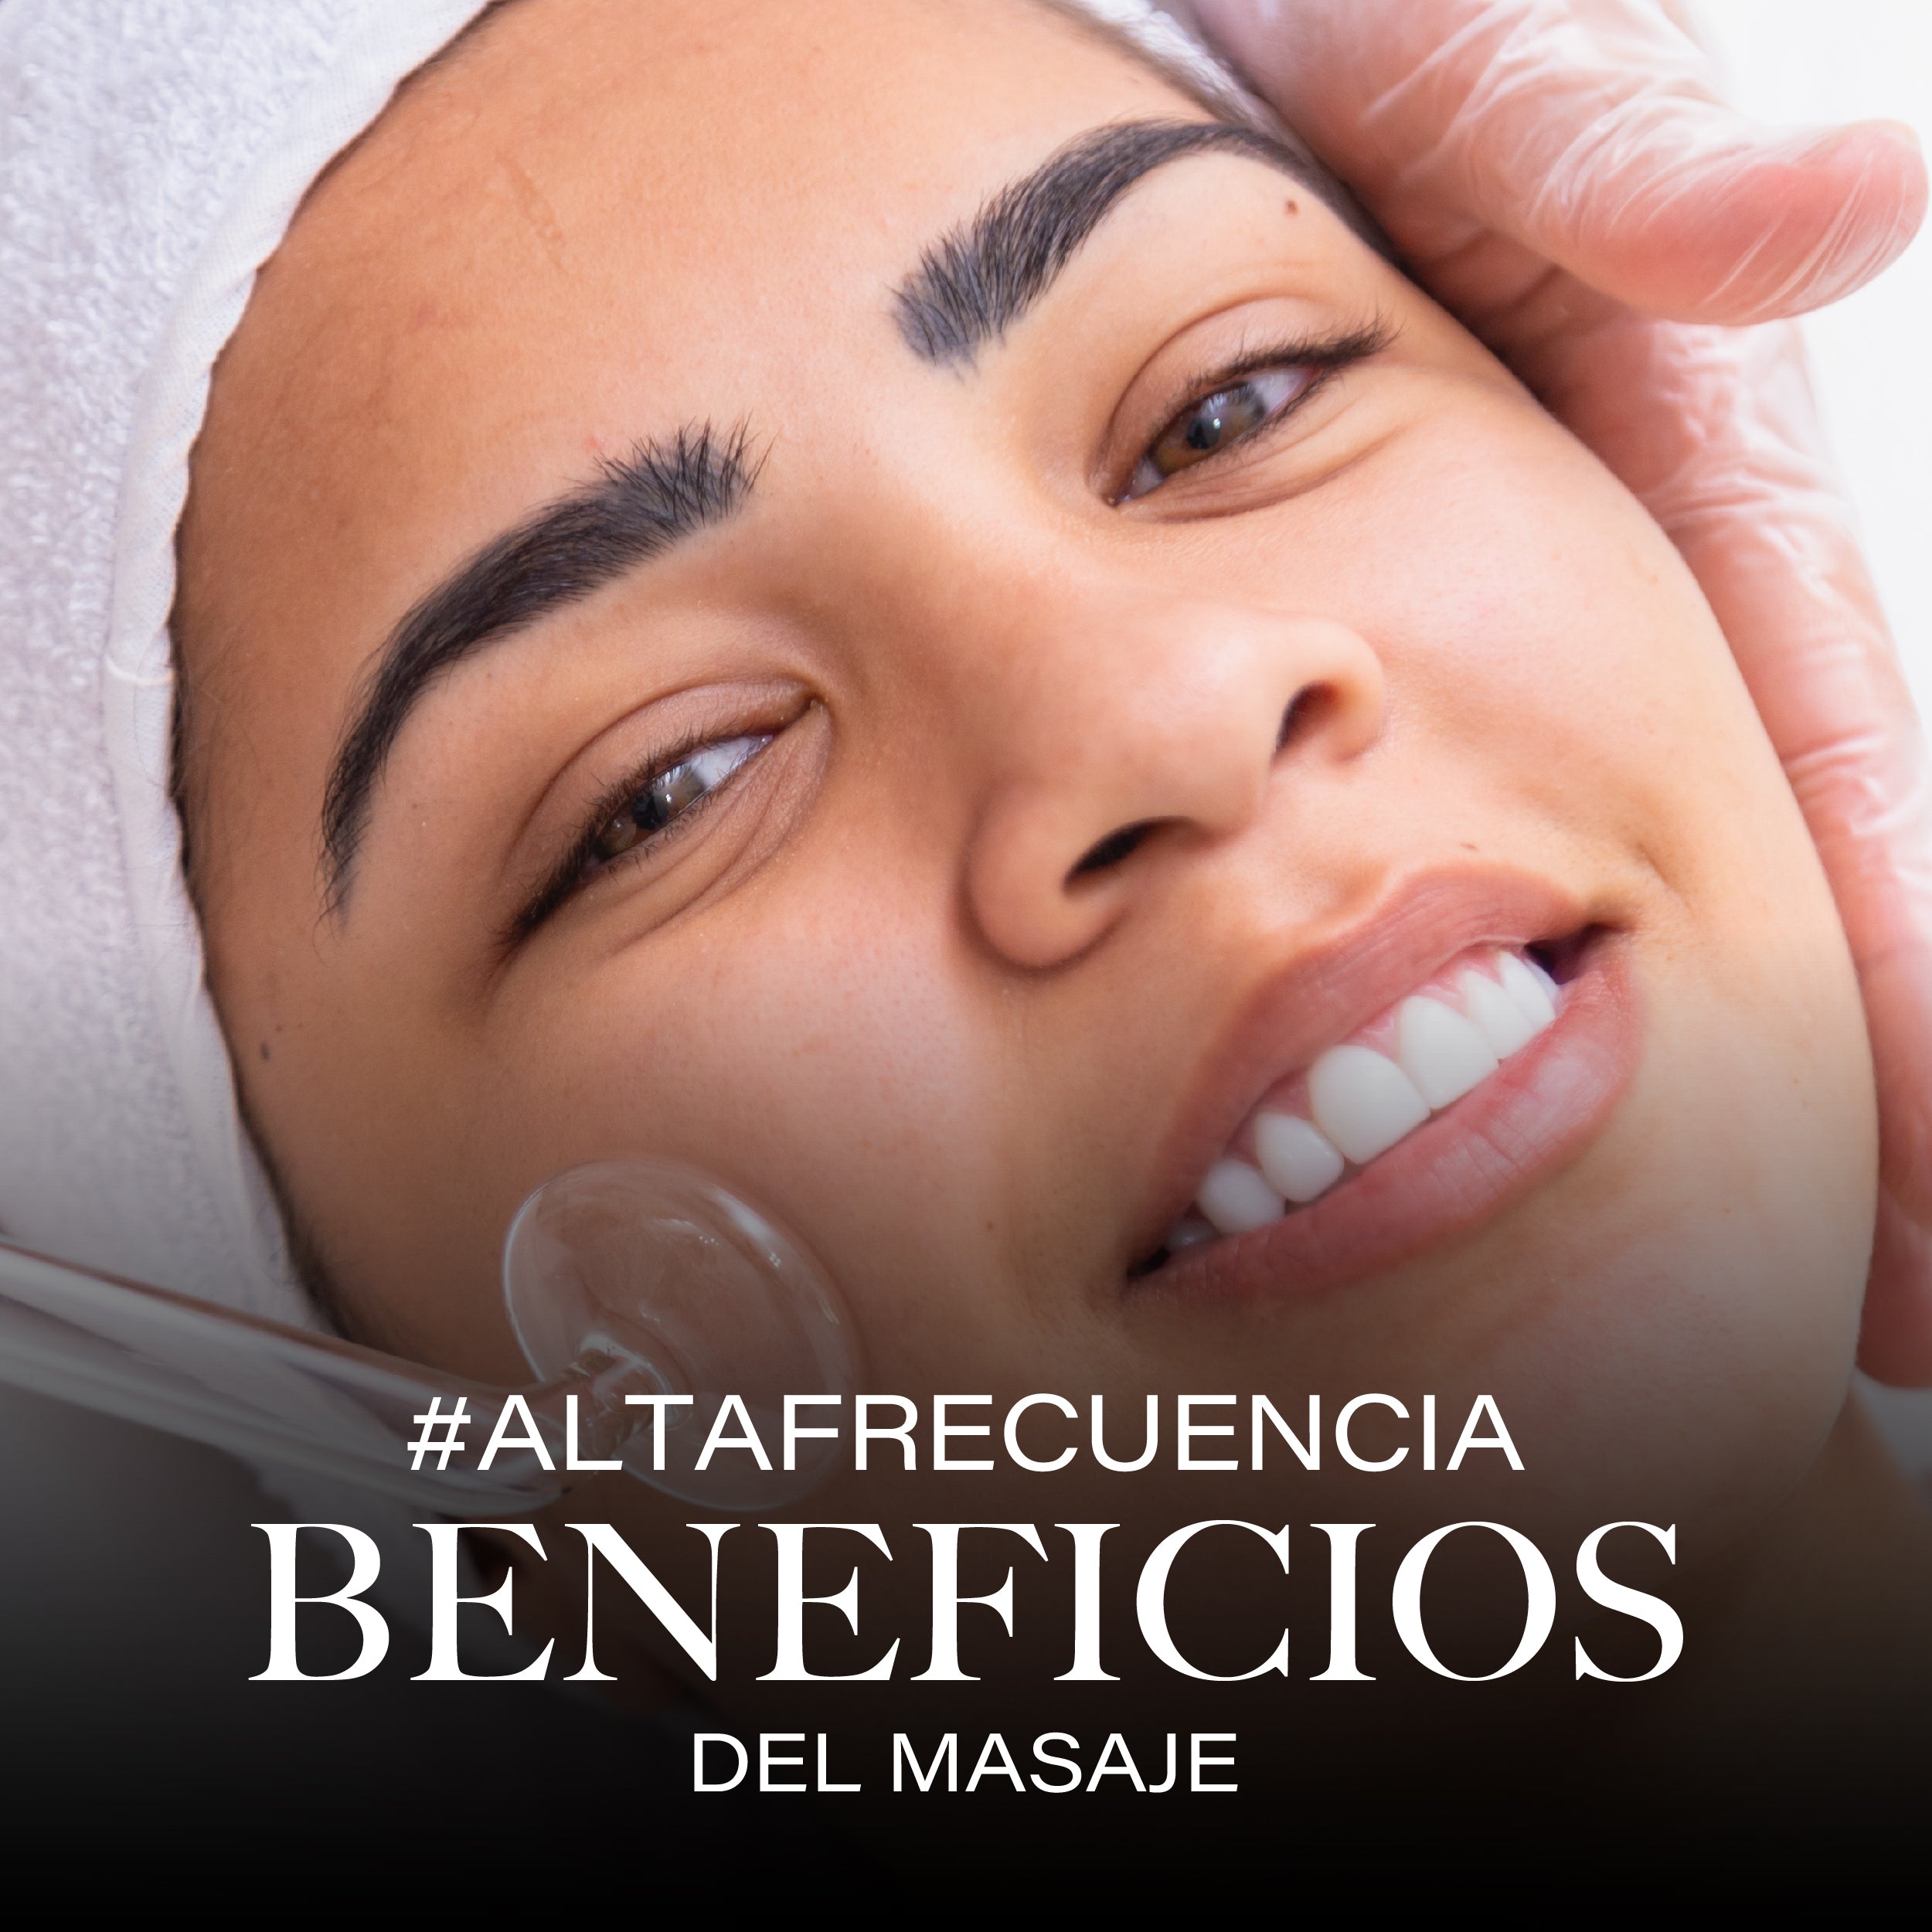 Cuidado de la piel:  ¿Qué beneficios tiene el masaje de alta frecuencia en mi rostro?